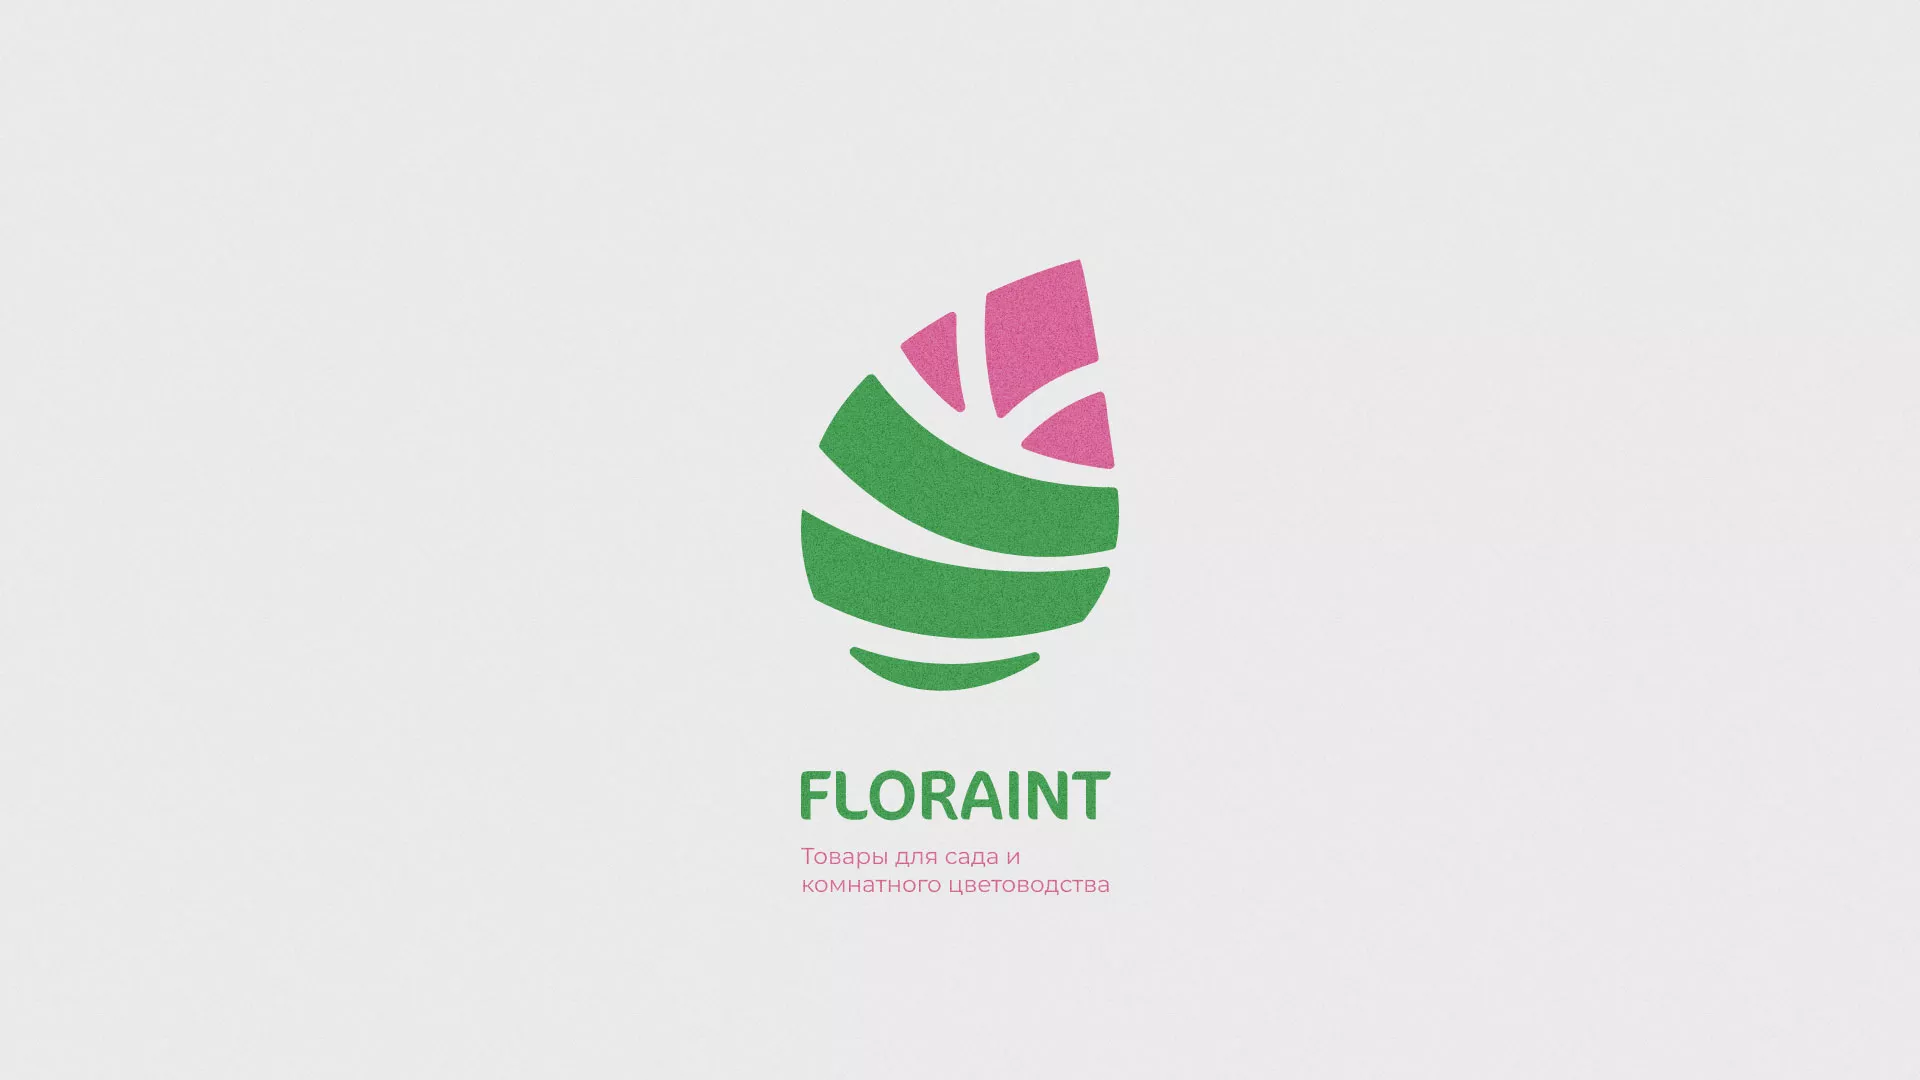 Разработка оформления профиля Instagram для магазина «Floraint» в Павлово